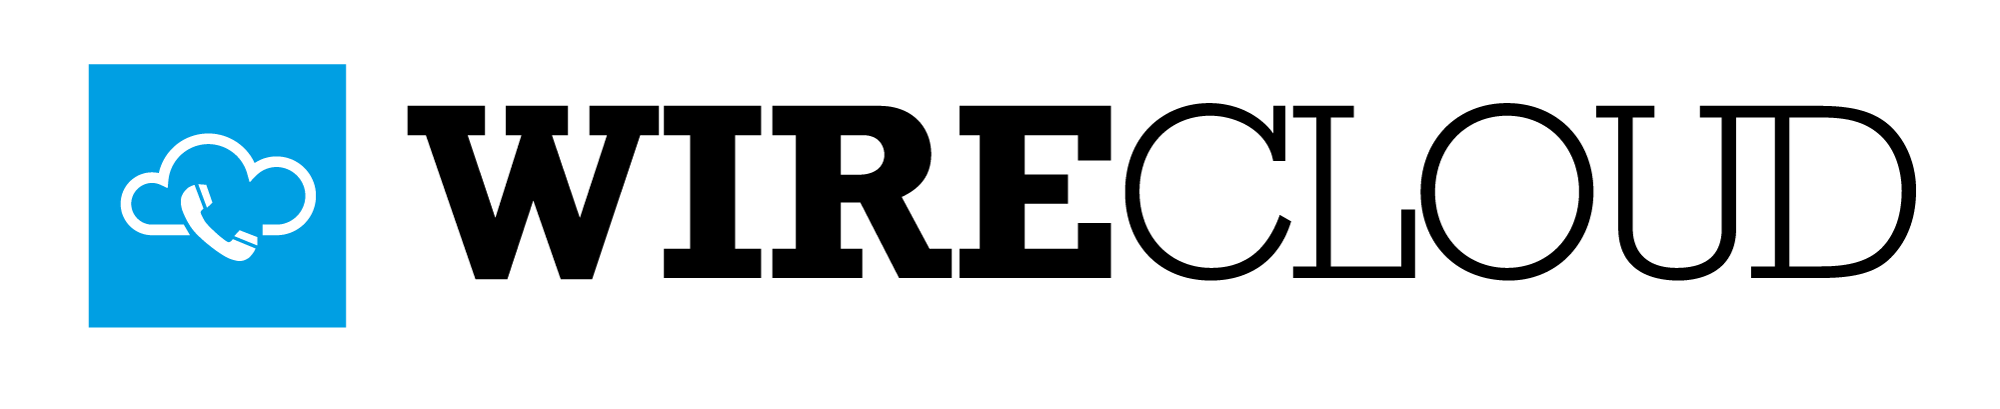 Logo WIRECLOUD